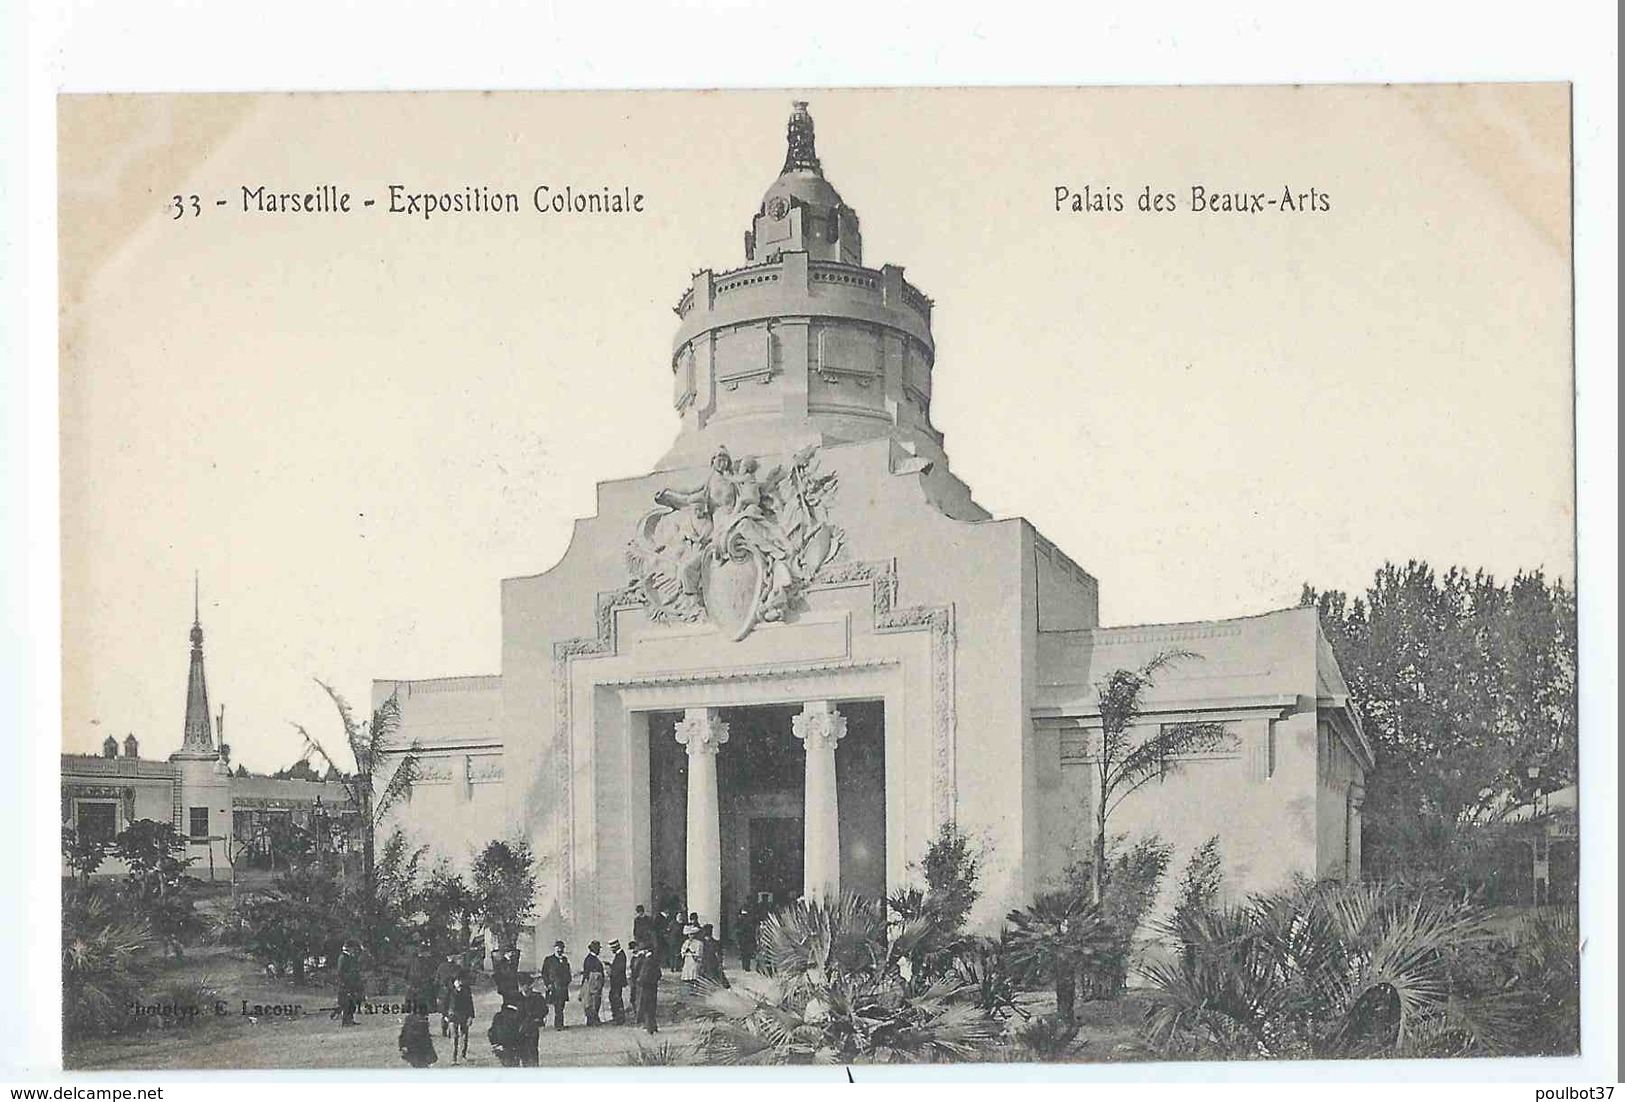 MARSEILLE : exposition coloniale 1906 - superbe lot 72 cartes dont ballon captif, Laos, Tunisie, Cochinchine. Tous scans